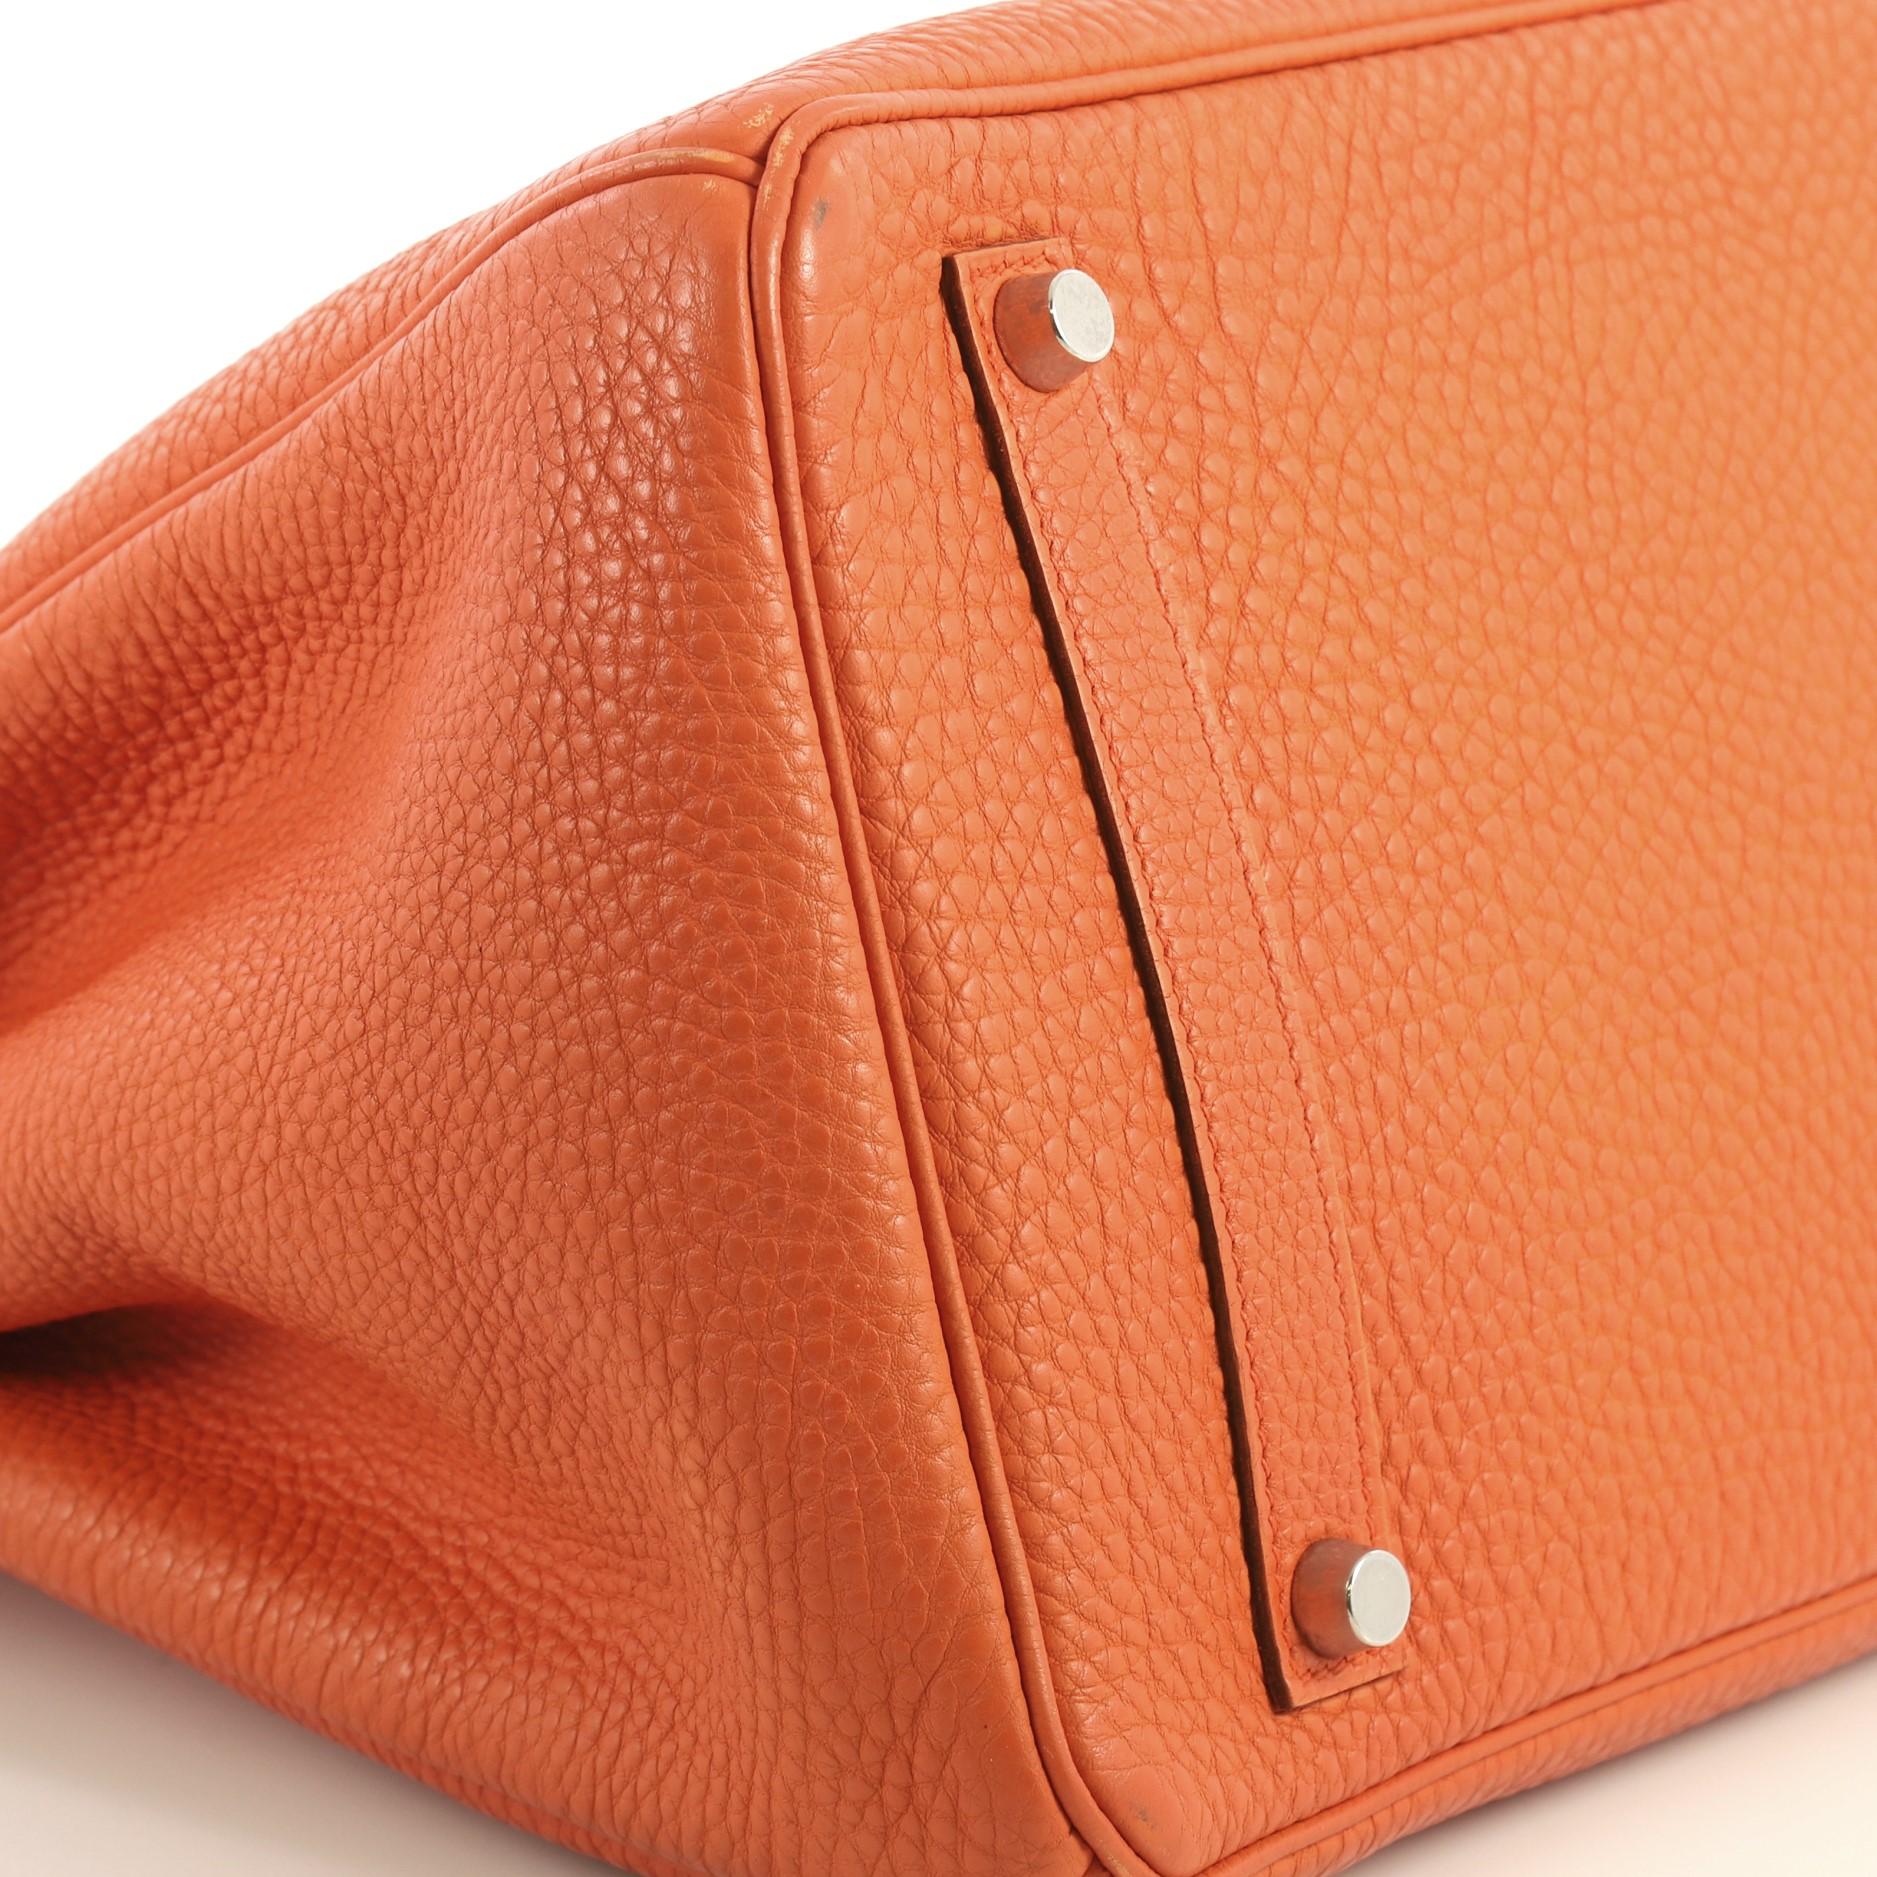 Hermes Birkin Handbag Orange H Togo with Palladium Hardware 35 2